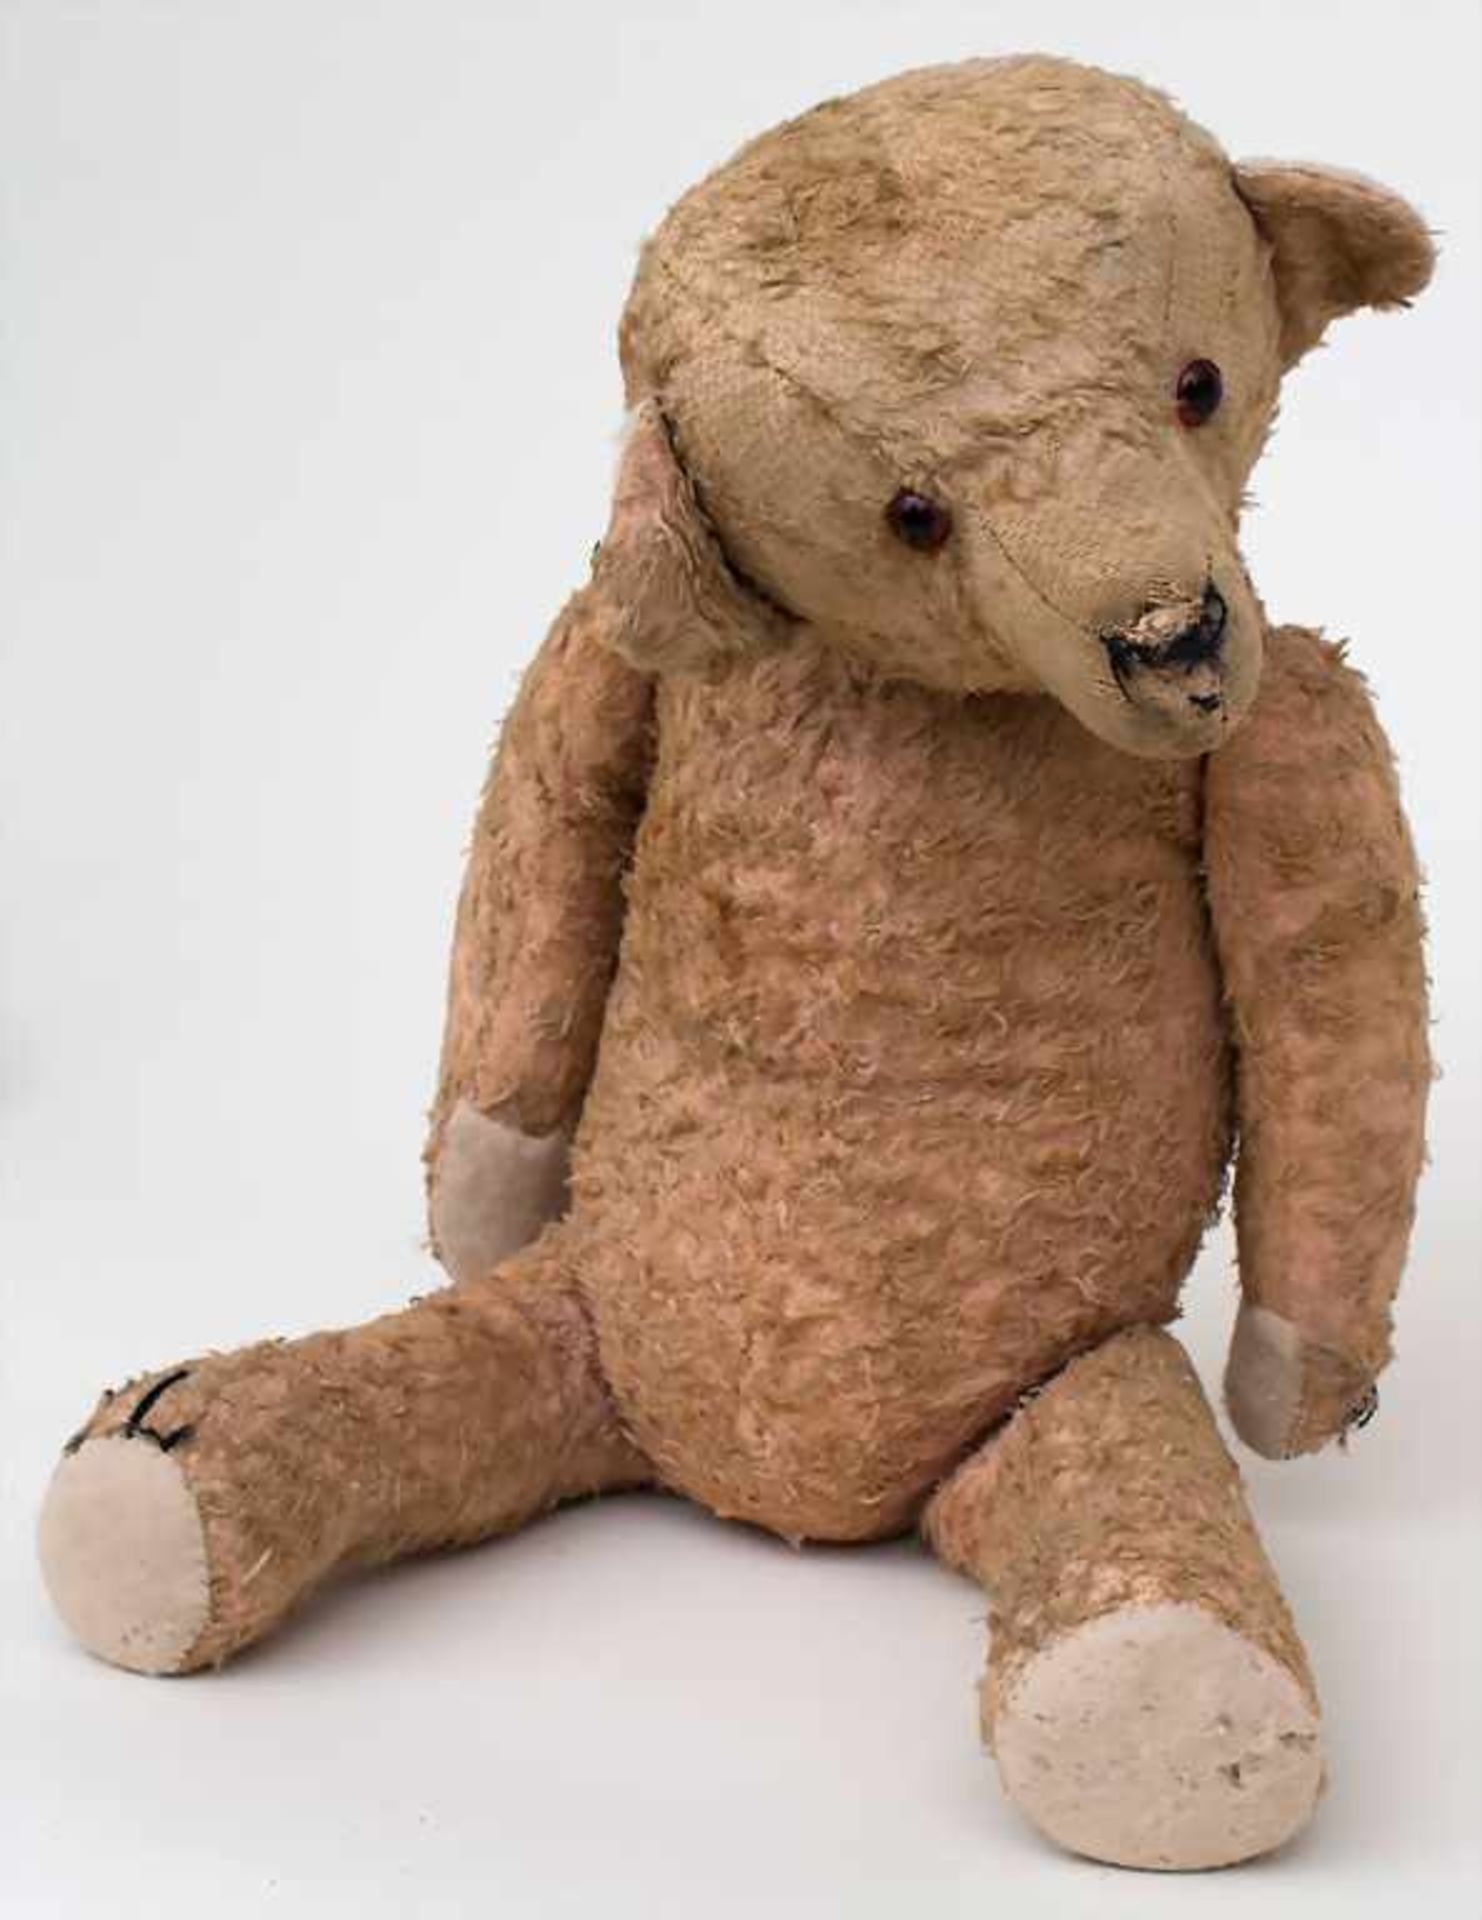 Teddybär / A teddy baerMaterial: Stoff, Glasaugen, bewegliche Arme, Beine und Kopf, Maße: L. 53